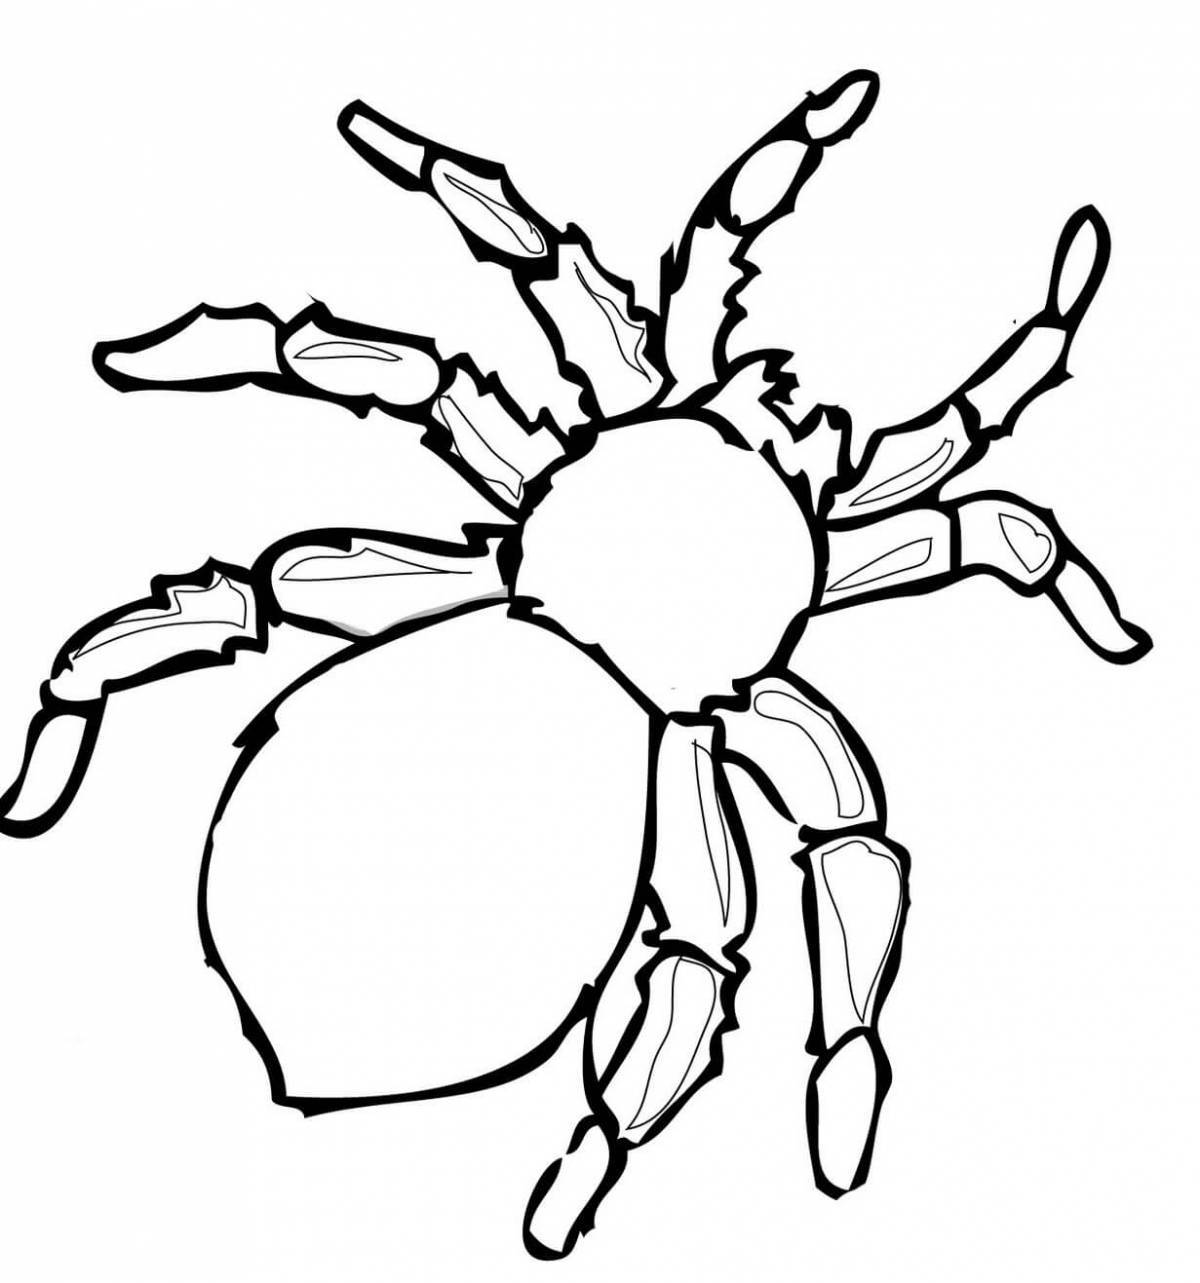 Spider #2